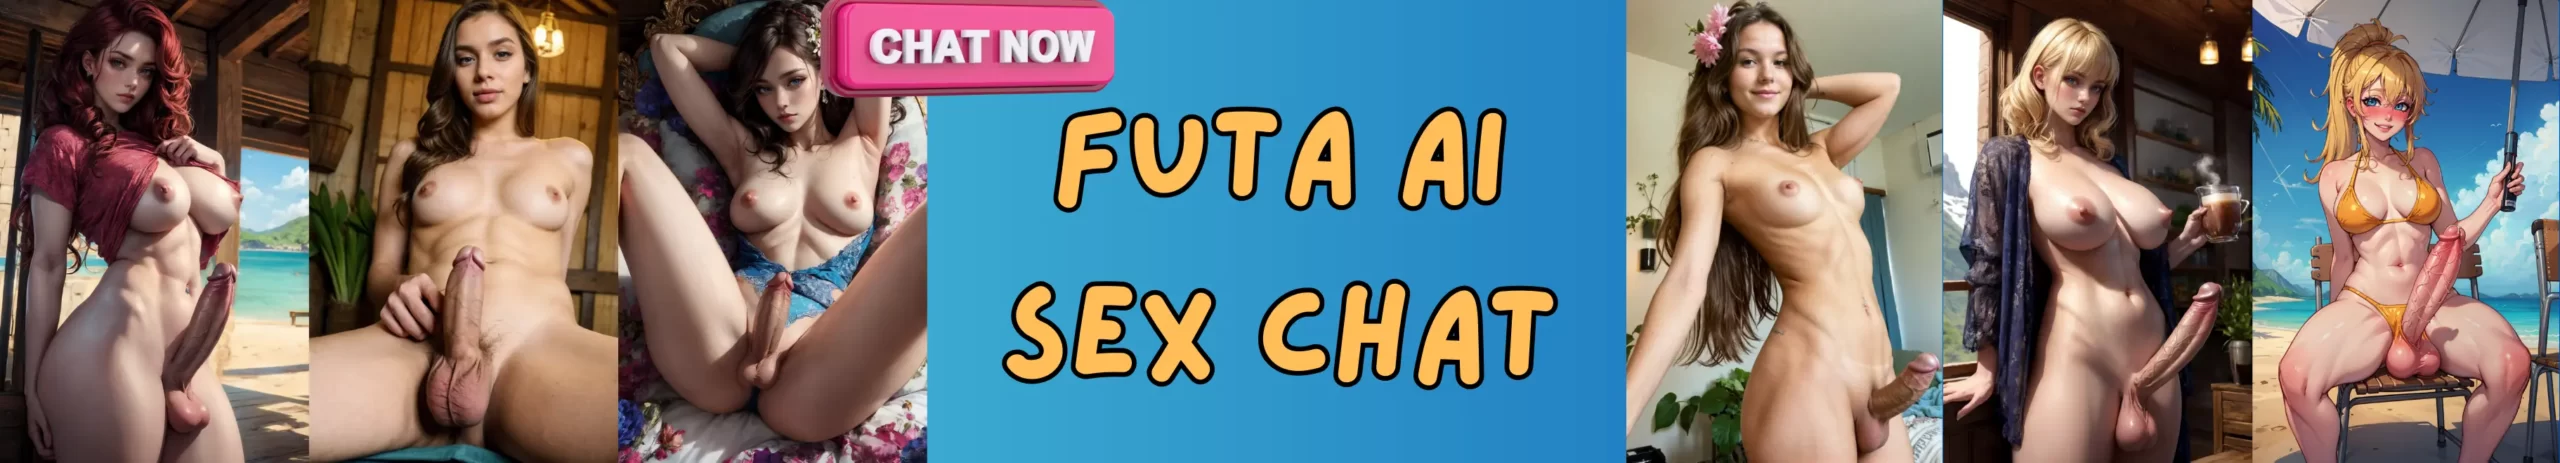 Futa AI Sex Chat